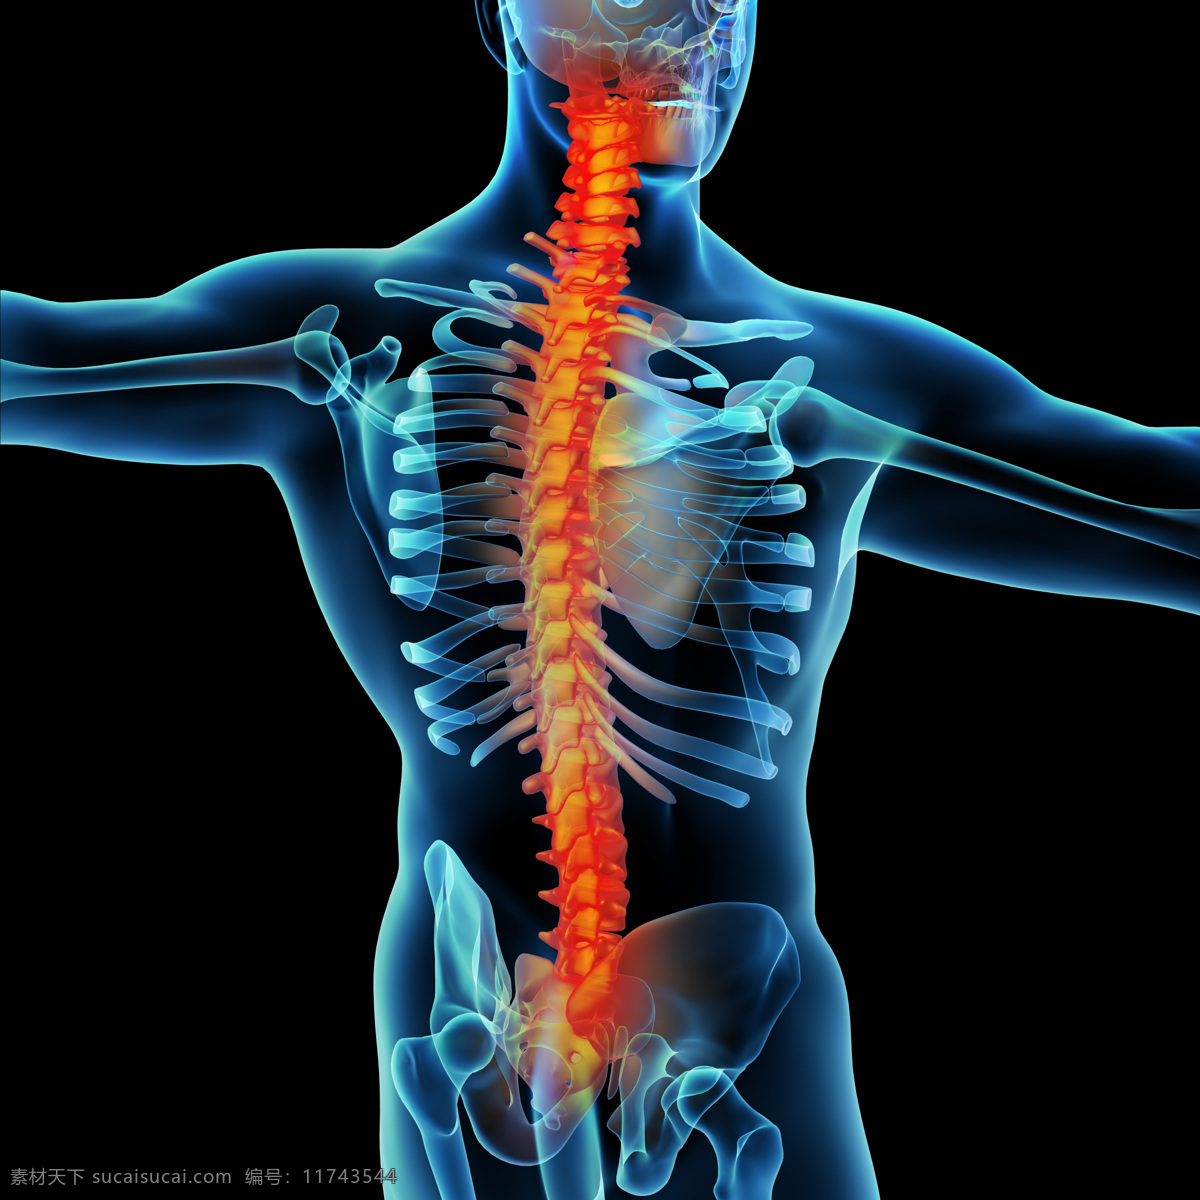 脊椎 肌肉 骨骼 结构 脊柱 颈椎 人体结构 人体骨骼 人体肌肉 人体标本 人体构造 医学 医疗 科学研究 现代科技